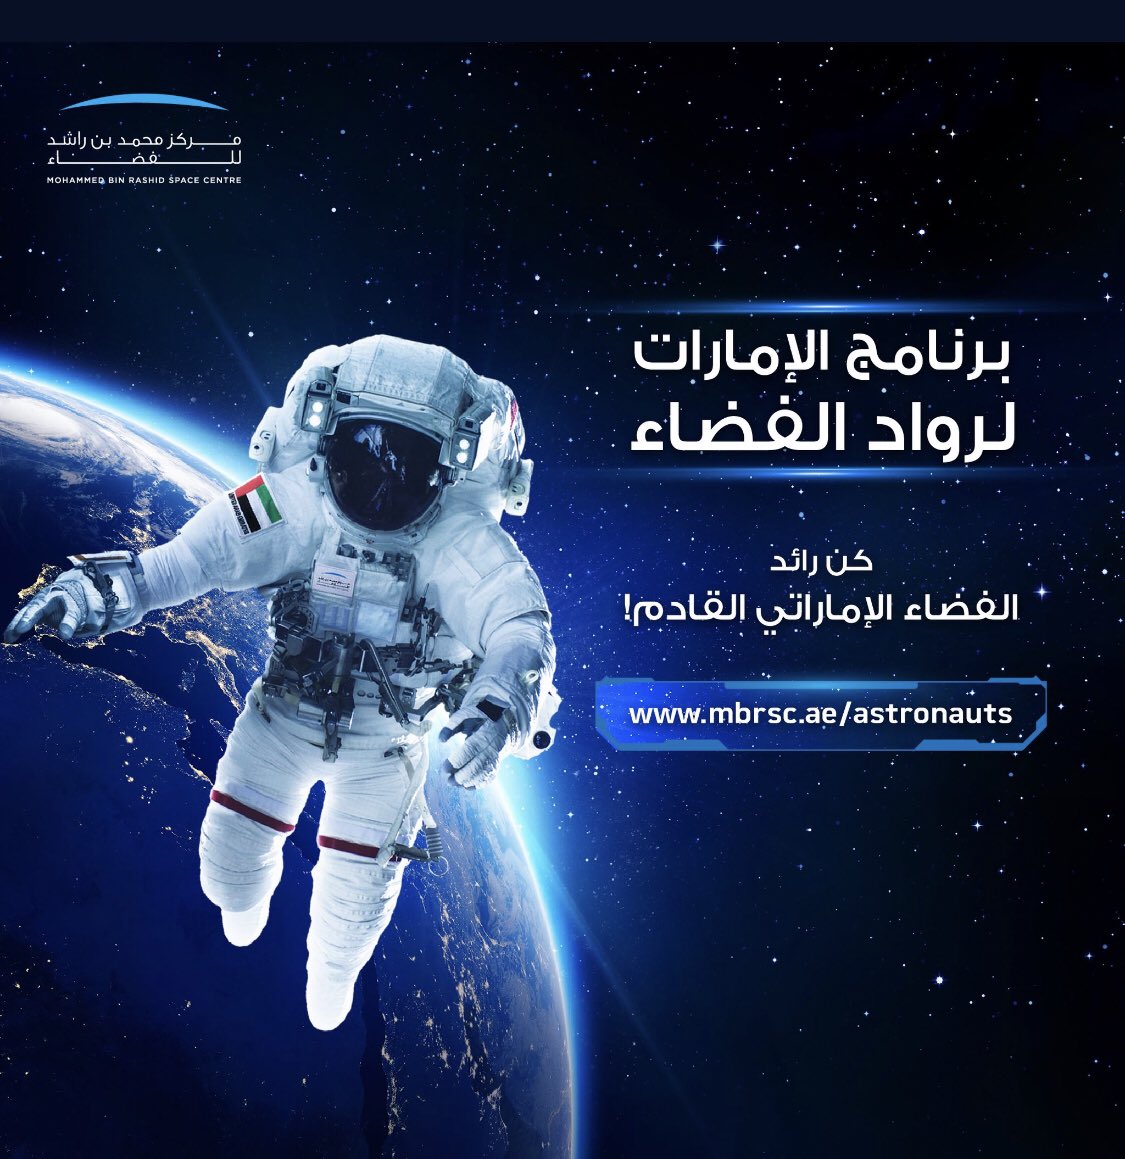 تمديد التسجيل في الدفعة الثانية من برنامج الإمارات لرواد الفضاء حتى 31 مارس